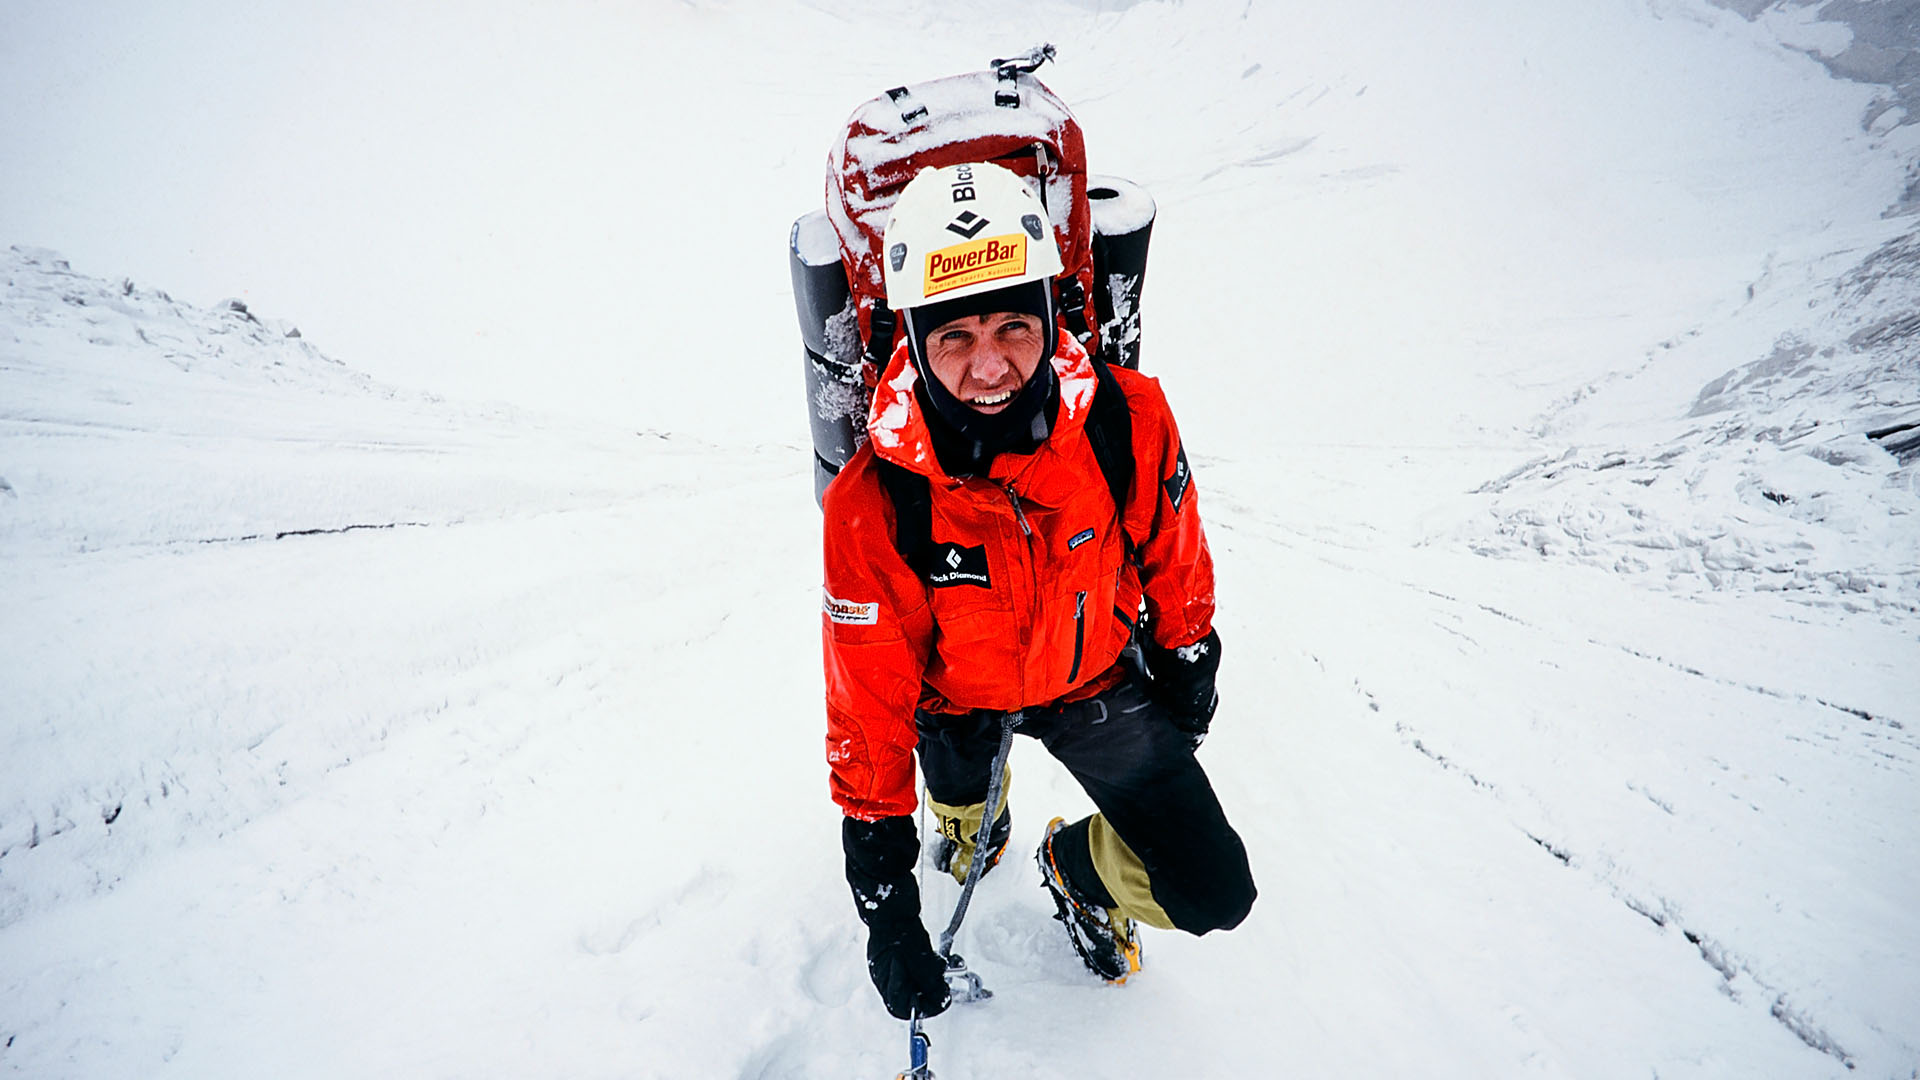 bhrigupanth expeditie - Mike van Berkel tijdens beklimming col - bergbeklimmer Melvin Redeker